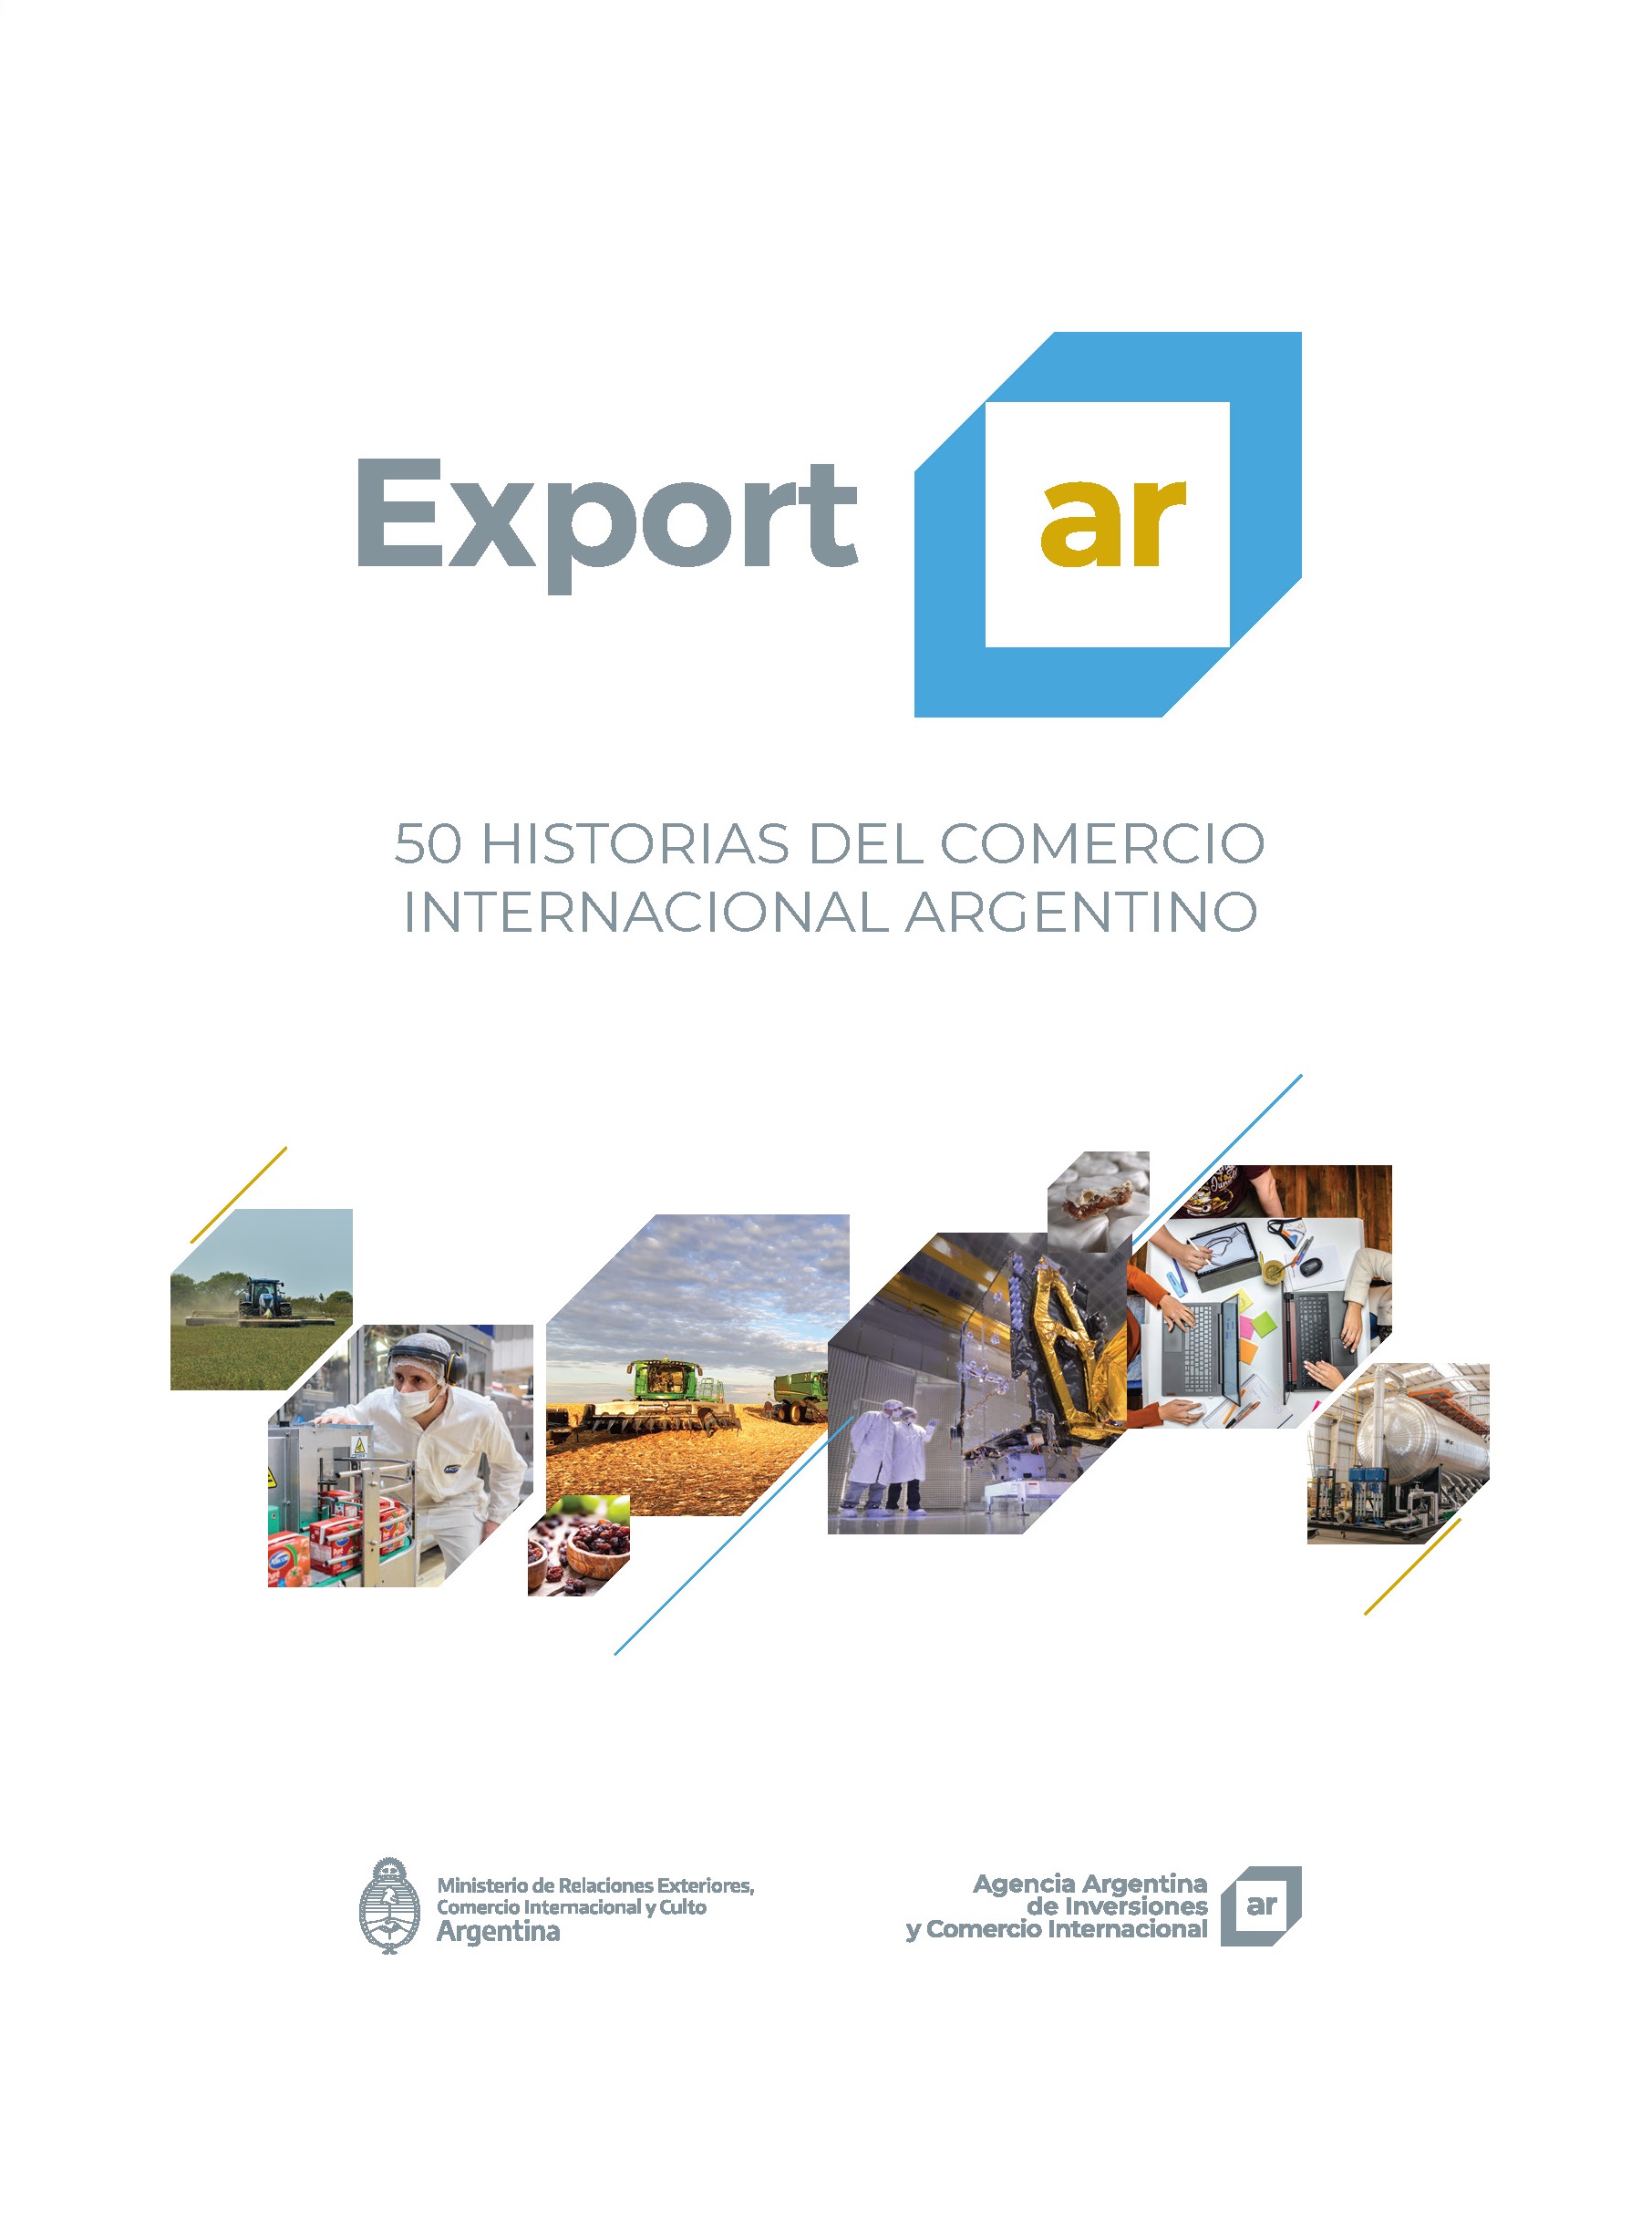 https://exportar.org.ar/images/publicaciones/Exportar. 50 historias del comercio internacional argentino